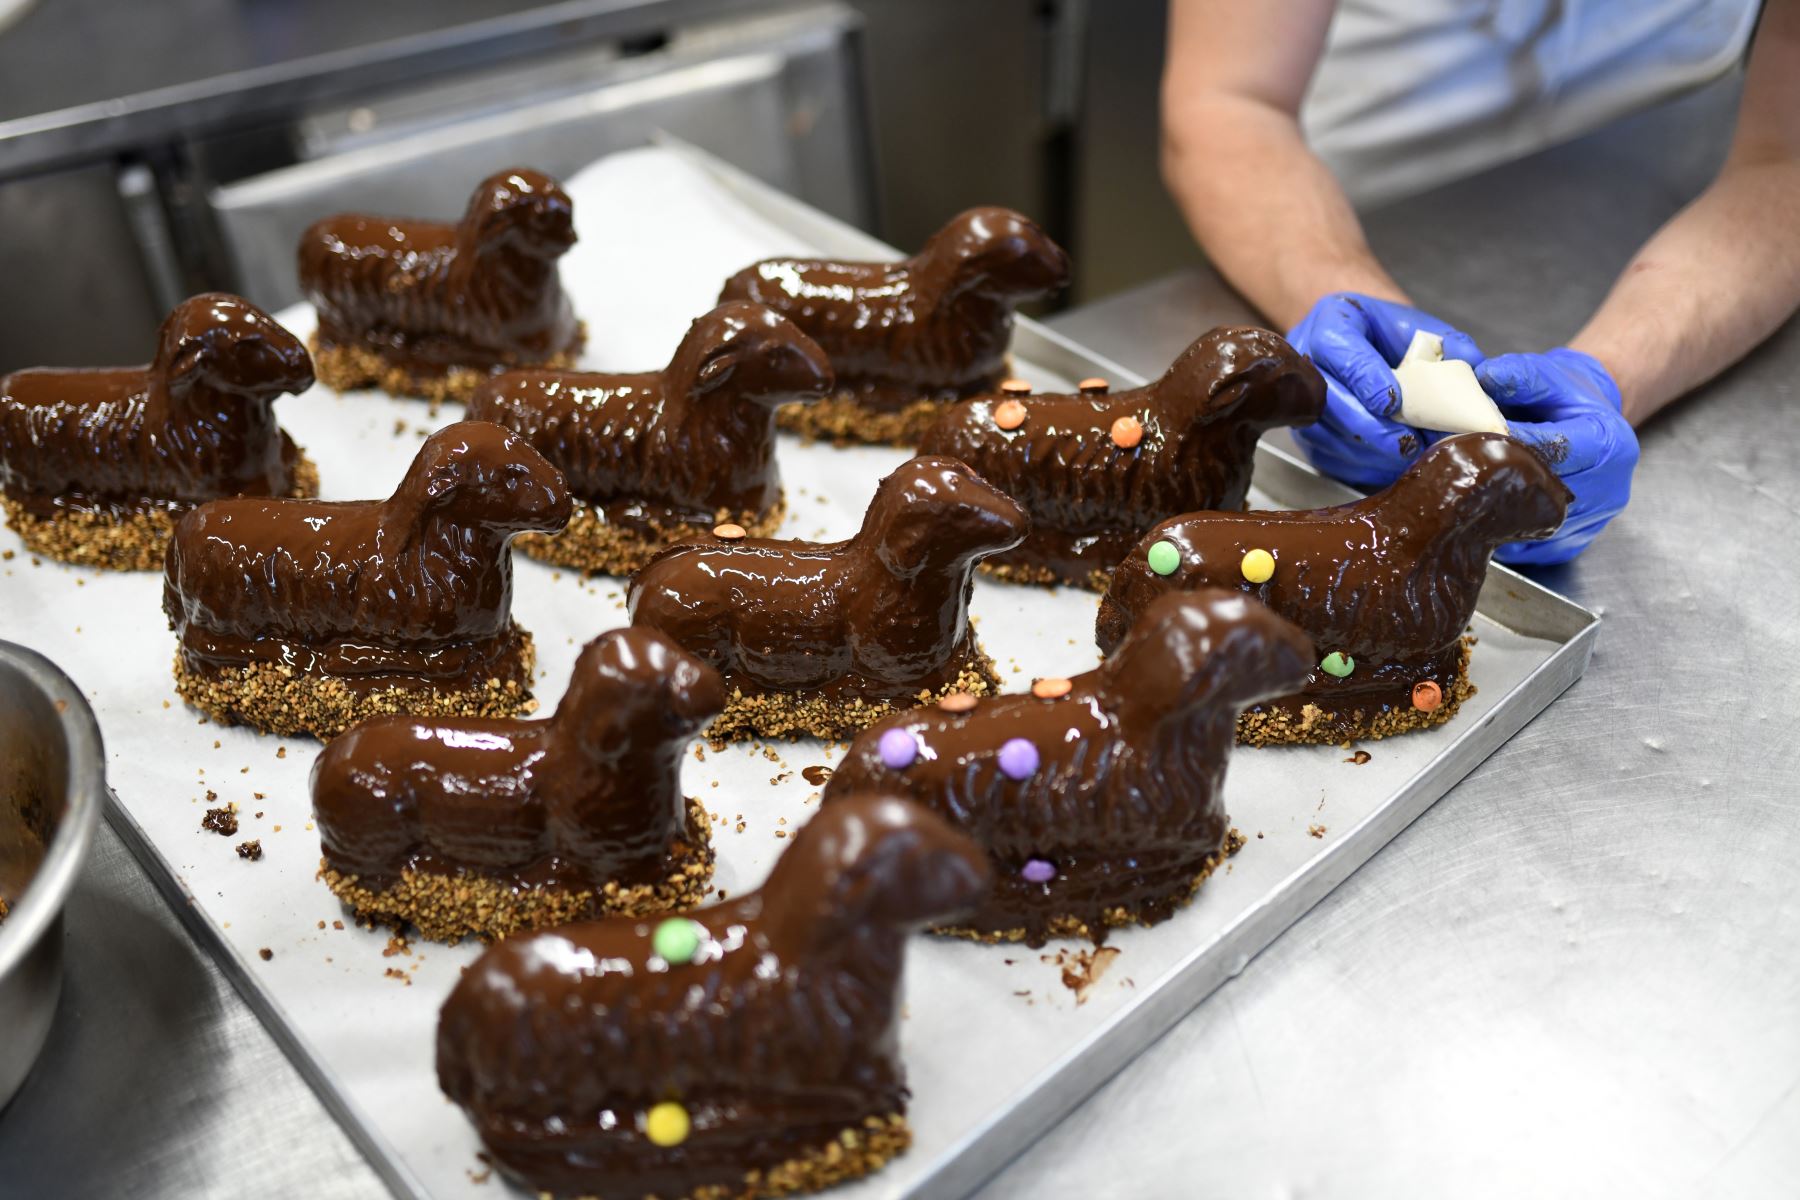 En la panadería Schuerener Backparadies en Dortmund, Alemania occidental,  en medio de la propagación del nuevo coronavirus, se exhiben pasteles tradicionales de chocolate de pascua con forma de corderos.
Foto: AFP